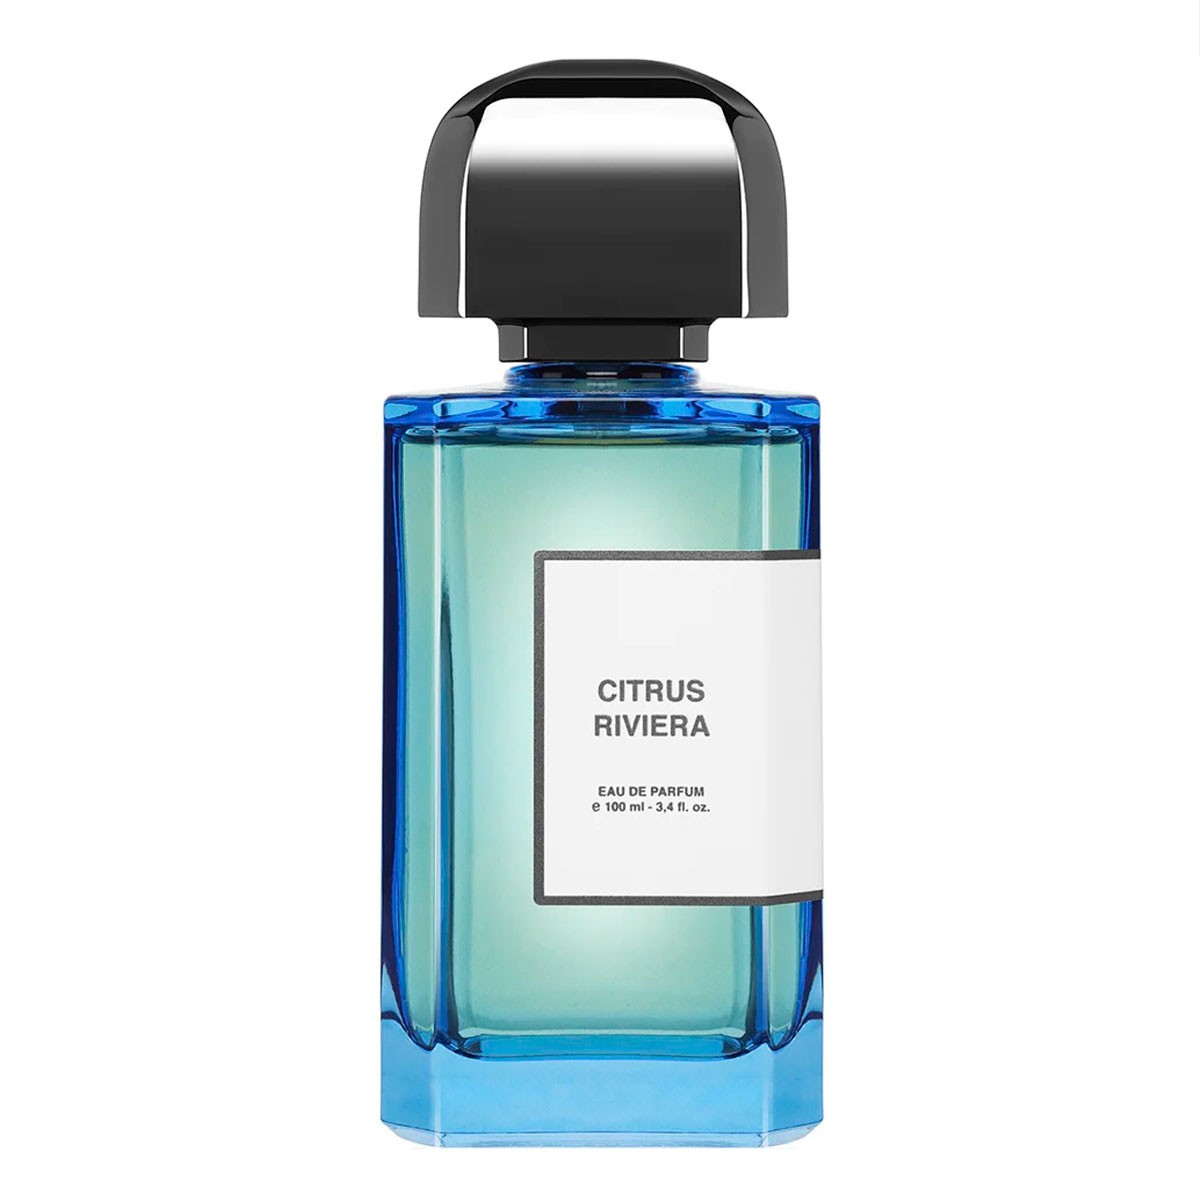 Descubre el perfume nicho Citrus Riviera de BDK Parfums. En exclusiva en jcApotecari.